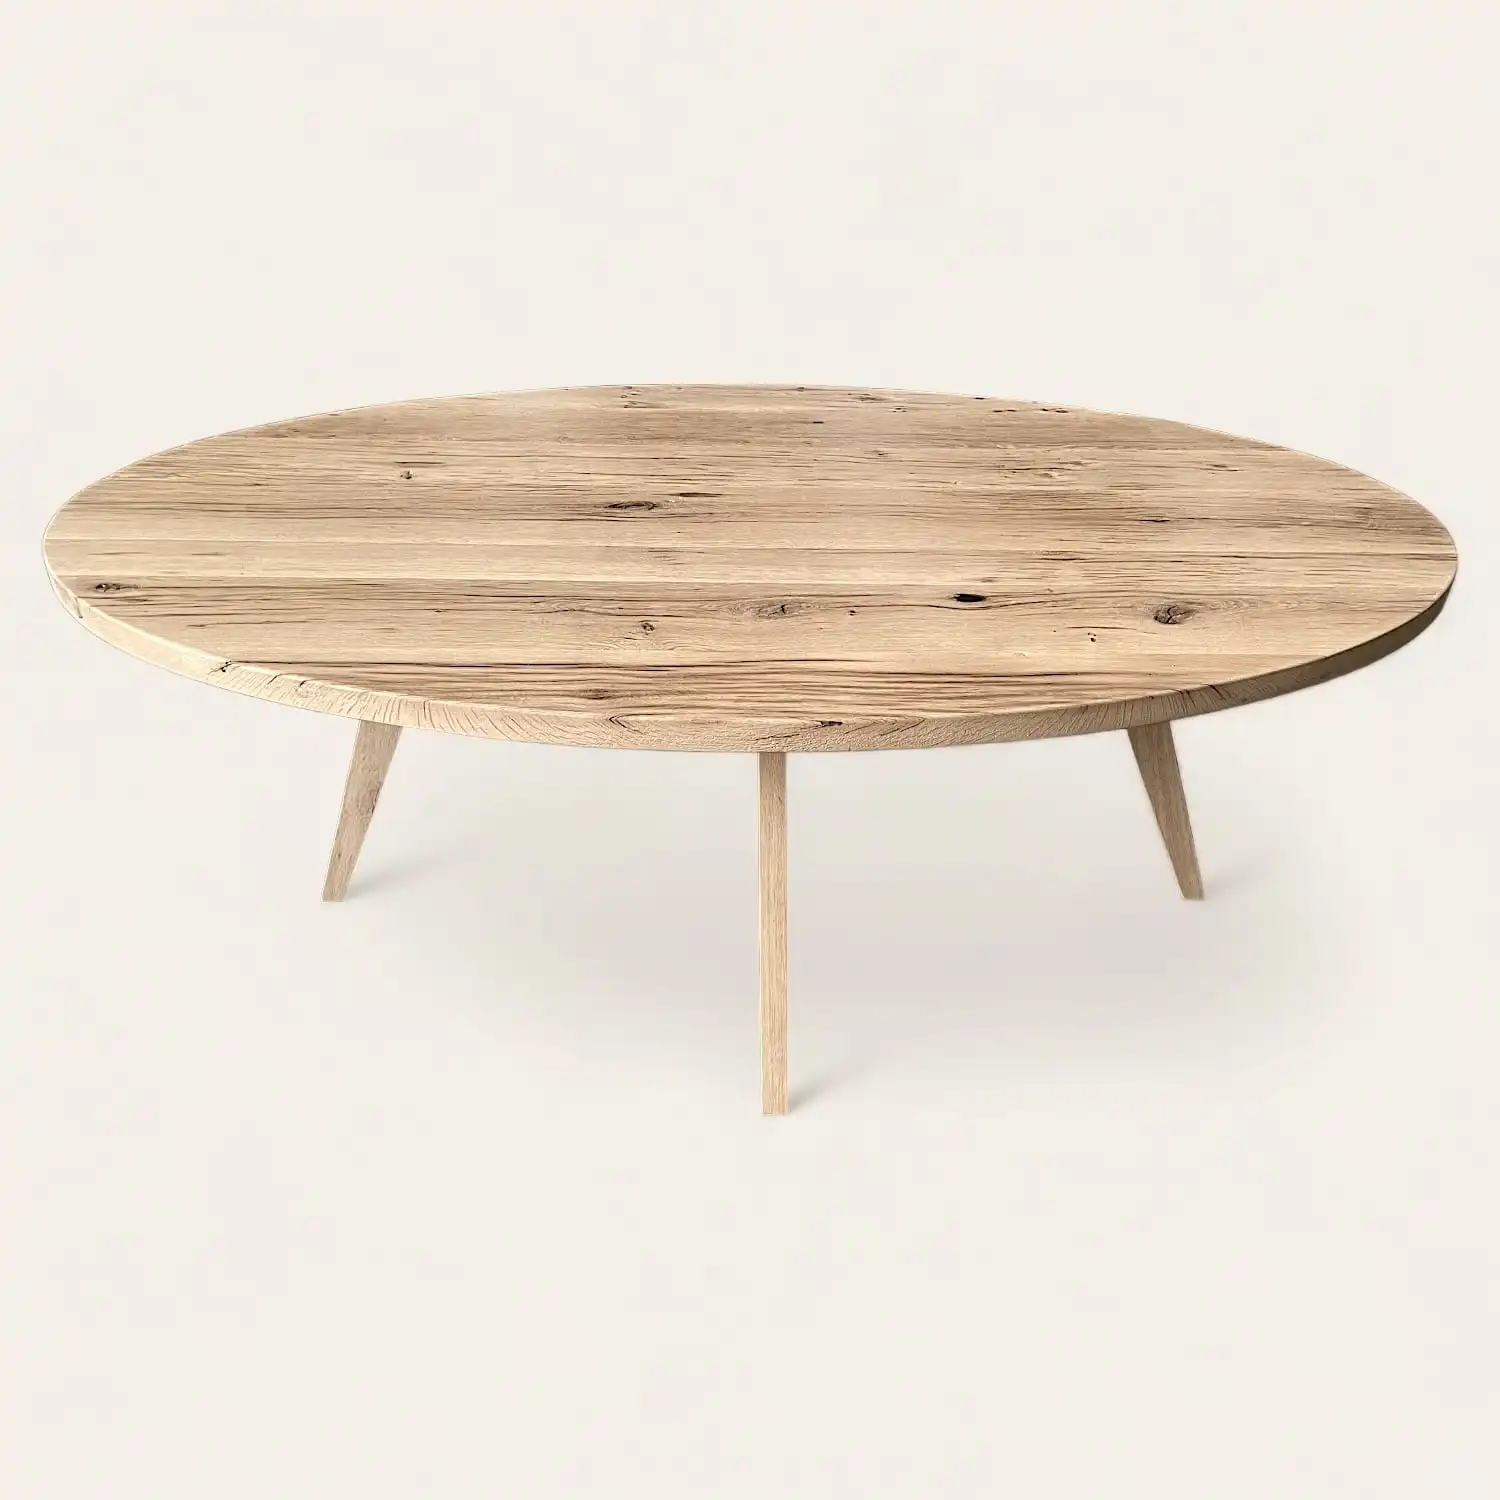  Une table rustique ovale avec pieds en bois. 